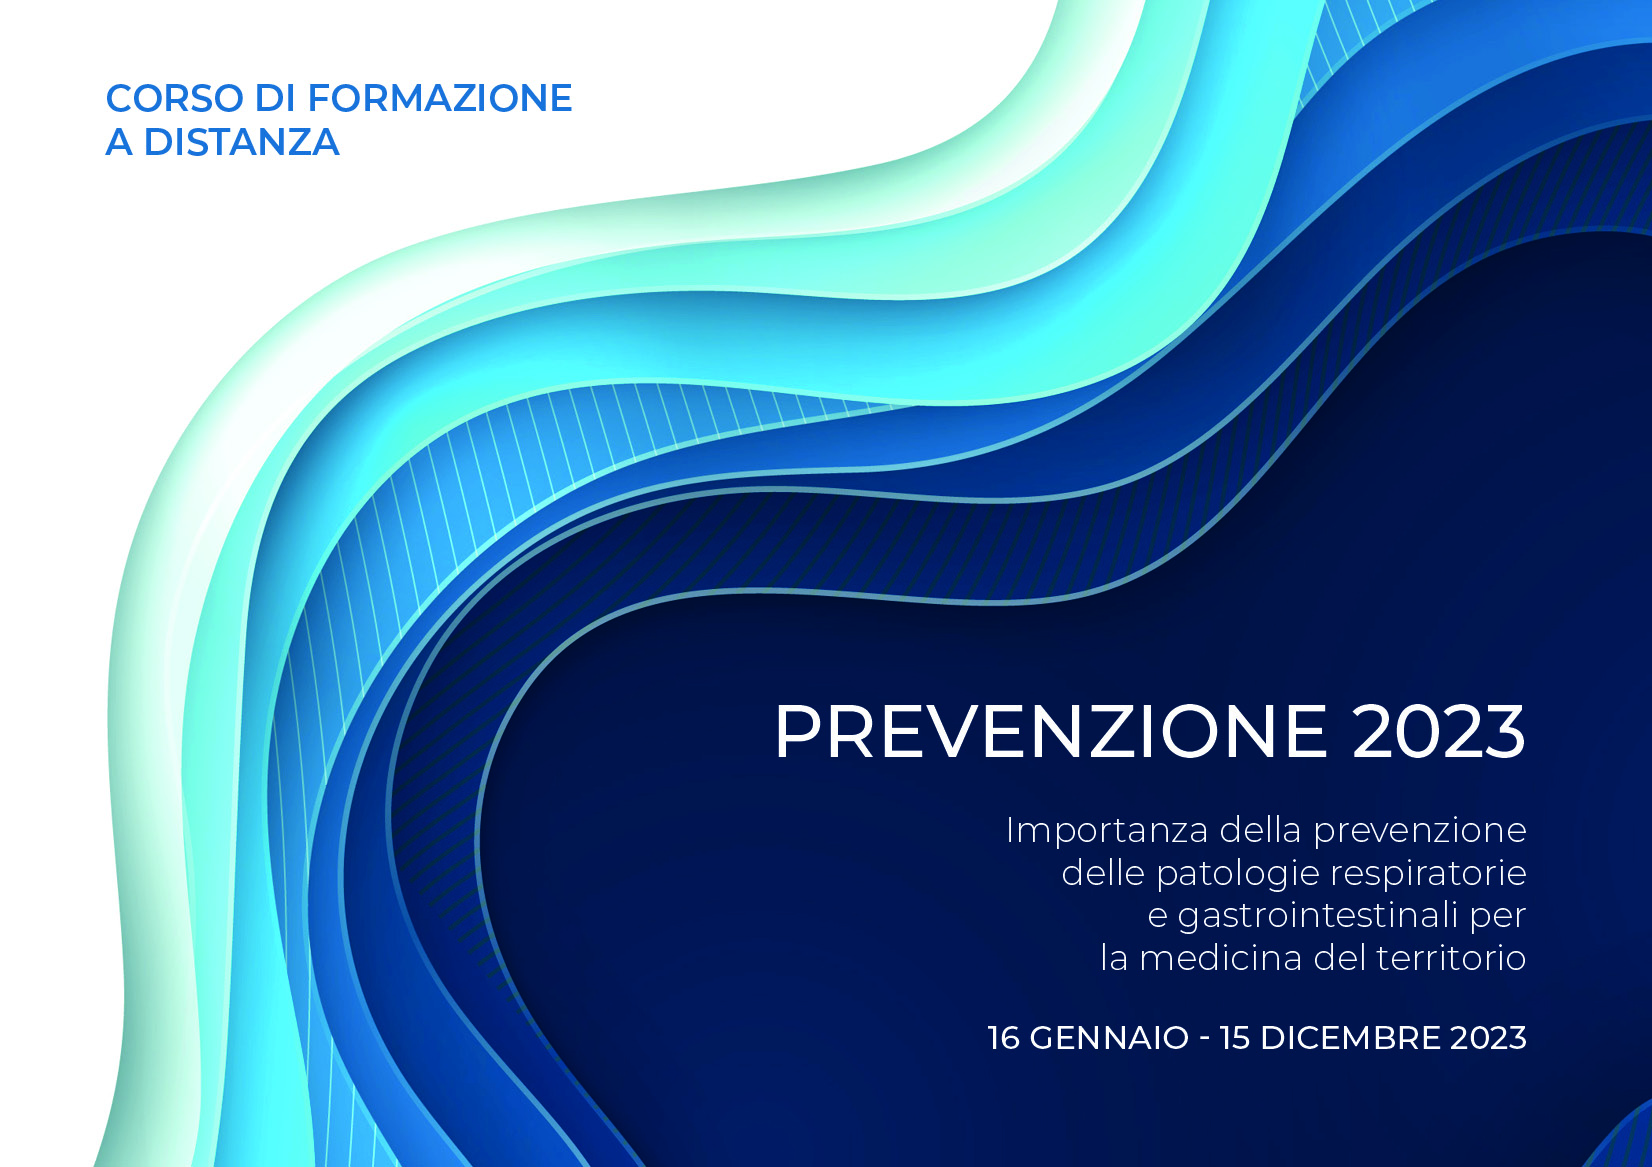 PREVENZIONE 2023 - Importanza della prevenzione delle patologie respiratorie e gastrointestinali per la medicina del territorio